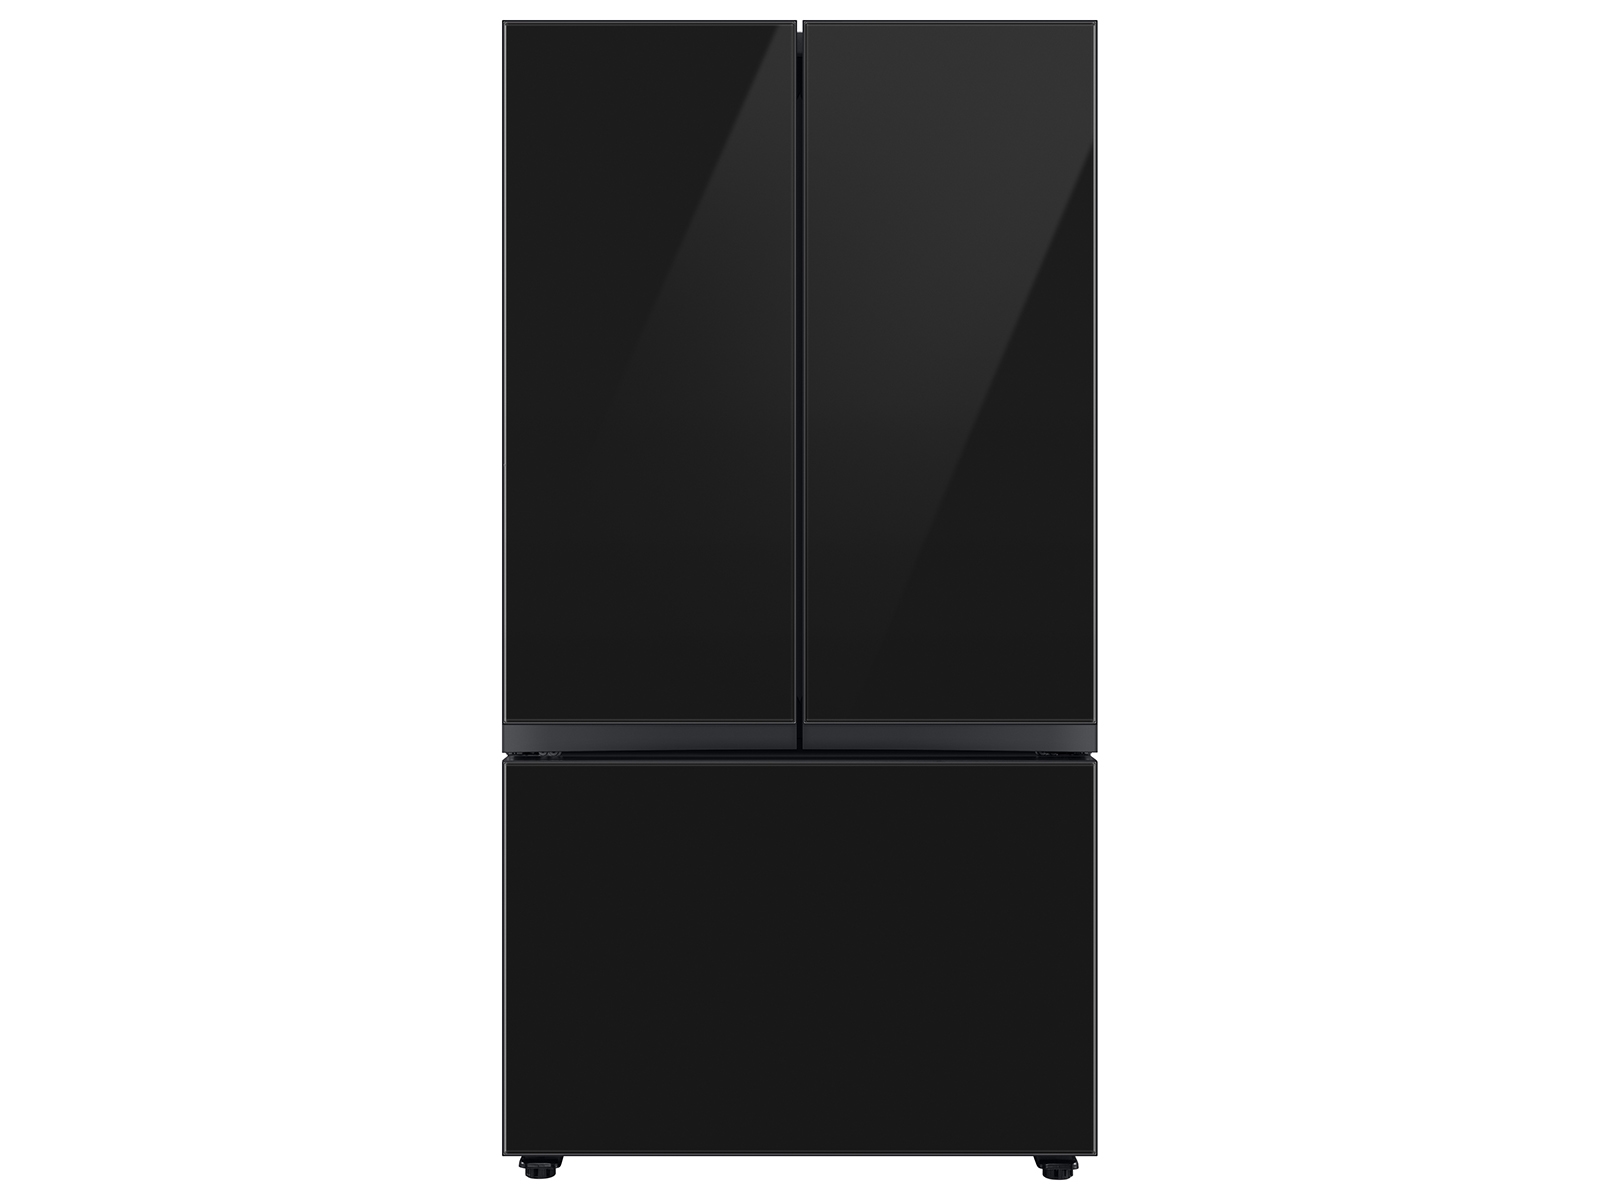 Bespoke 3-Door French Door Refrigerator (30 cu. ft.) with Beverage Center&trade; in Charcoal Glass